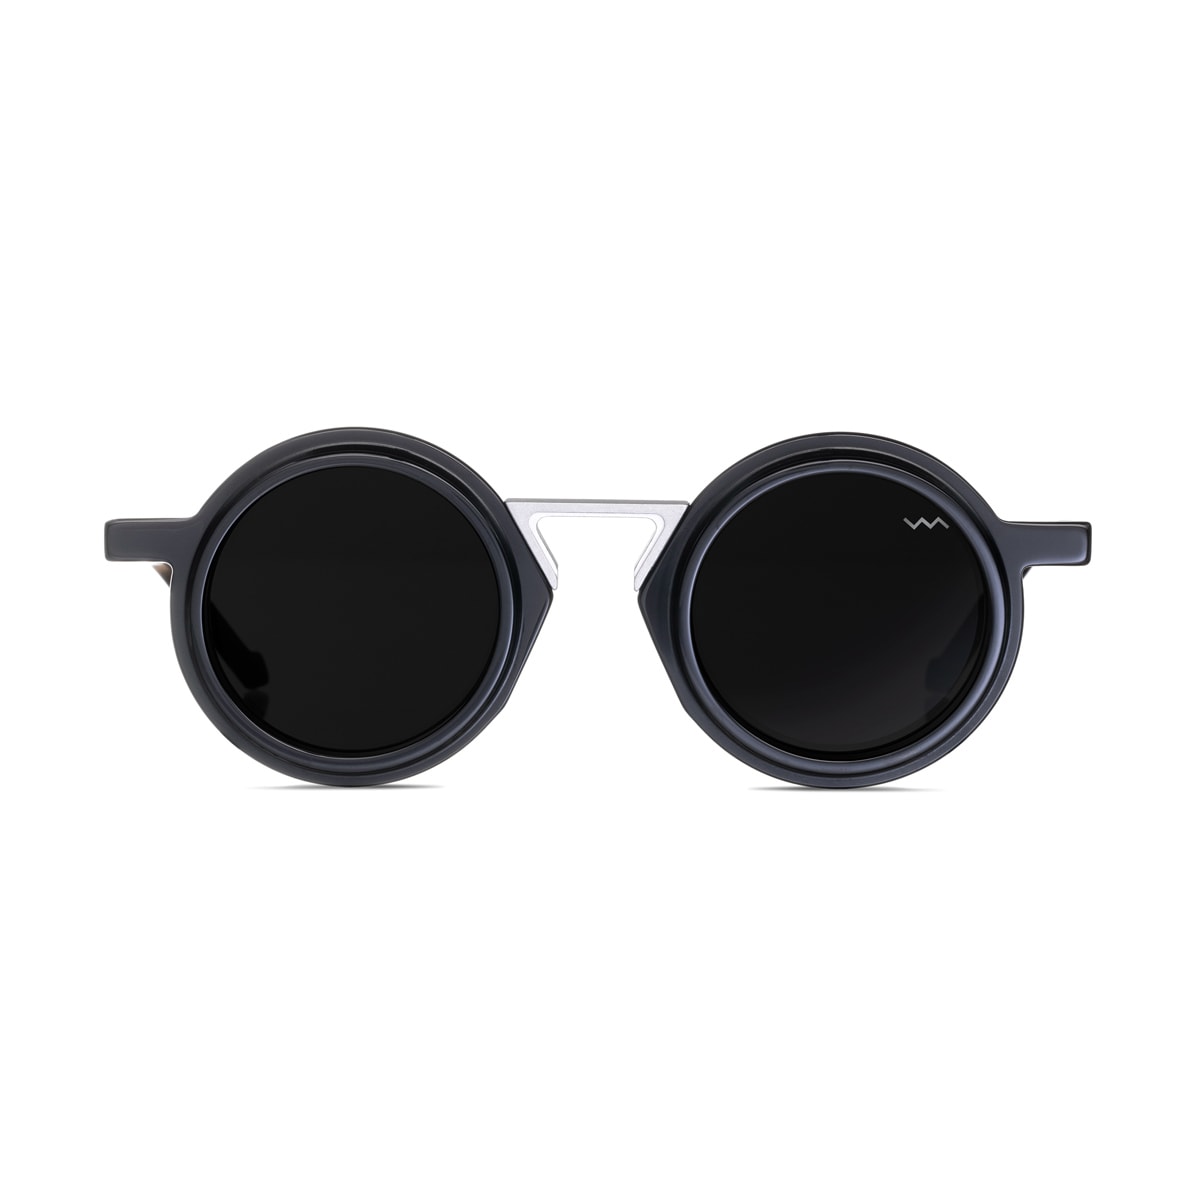 Wl0058 Wl0058 White Label Black Matte Sunglasses